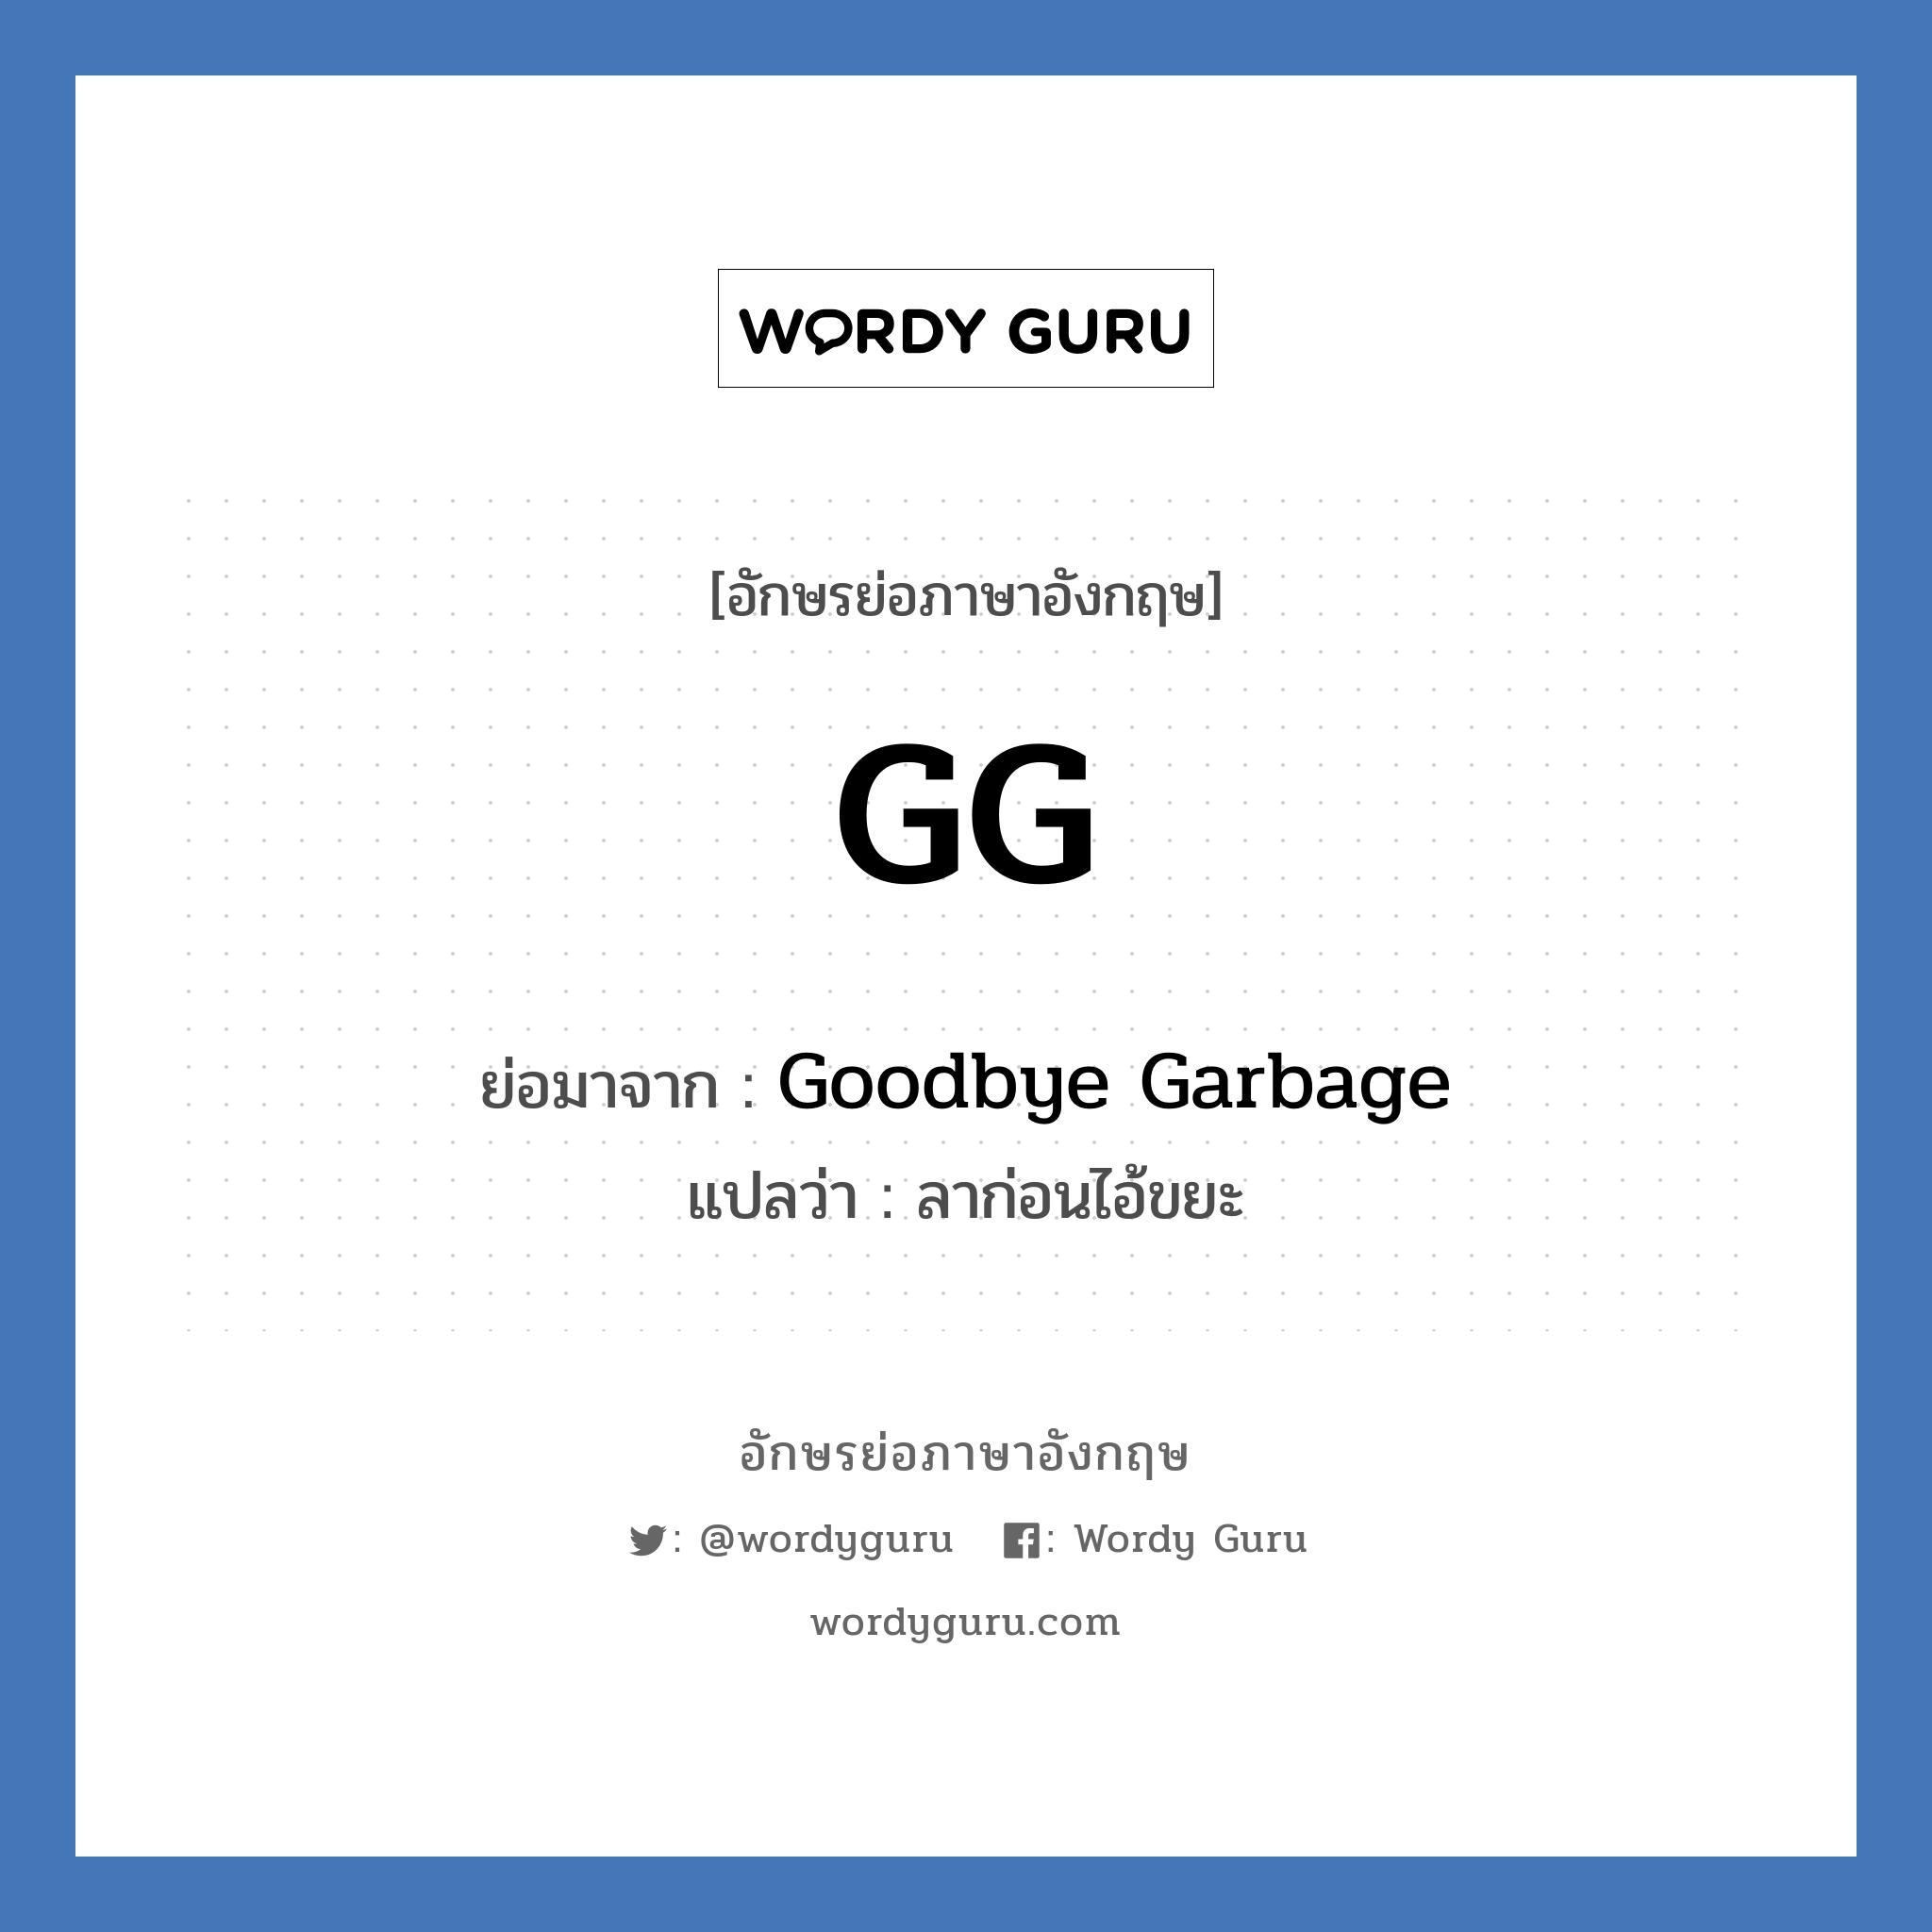 Goodbye Garbage คำย่อคือ? แปลว่า?, อักษรย่อภาษาอังกฤษ Goodbye Garbage ย่อมาจาก GG แปลว่า ลาก่อนไอ้ขยะ